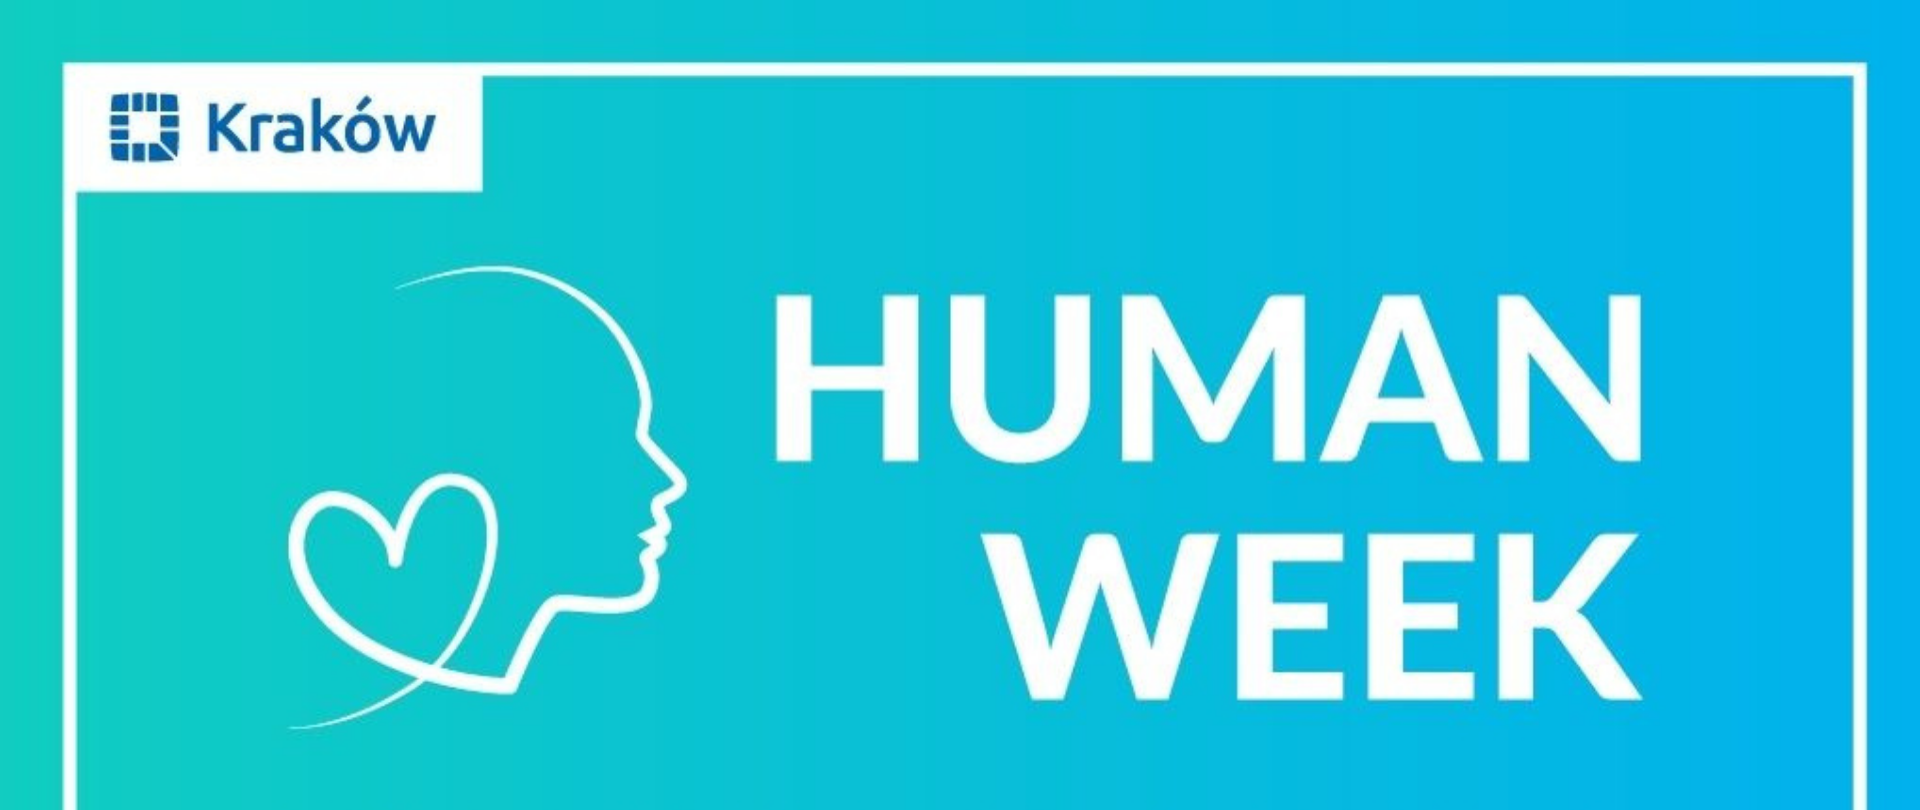 Human Week